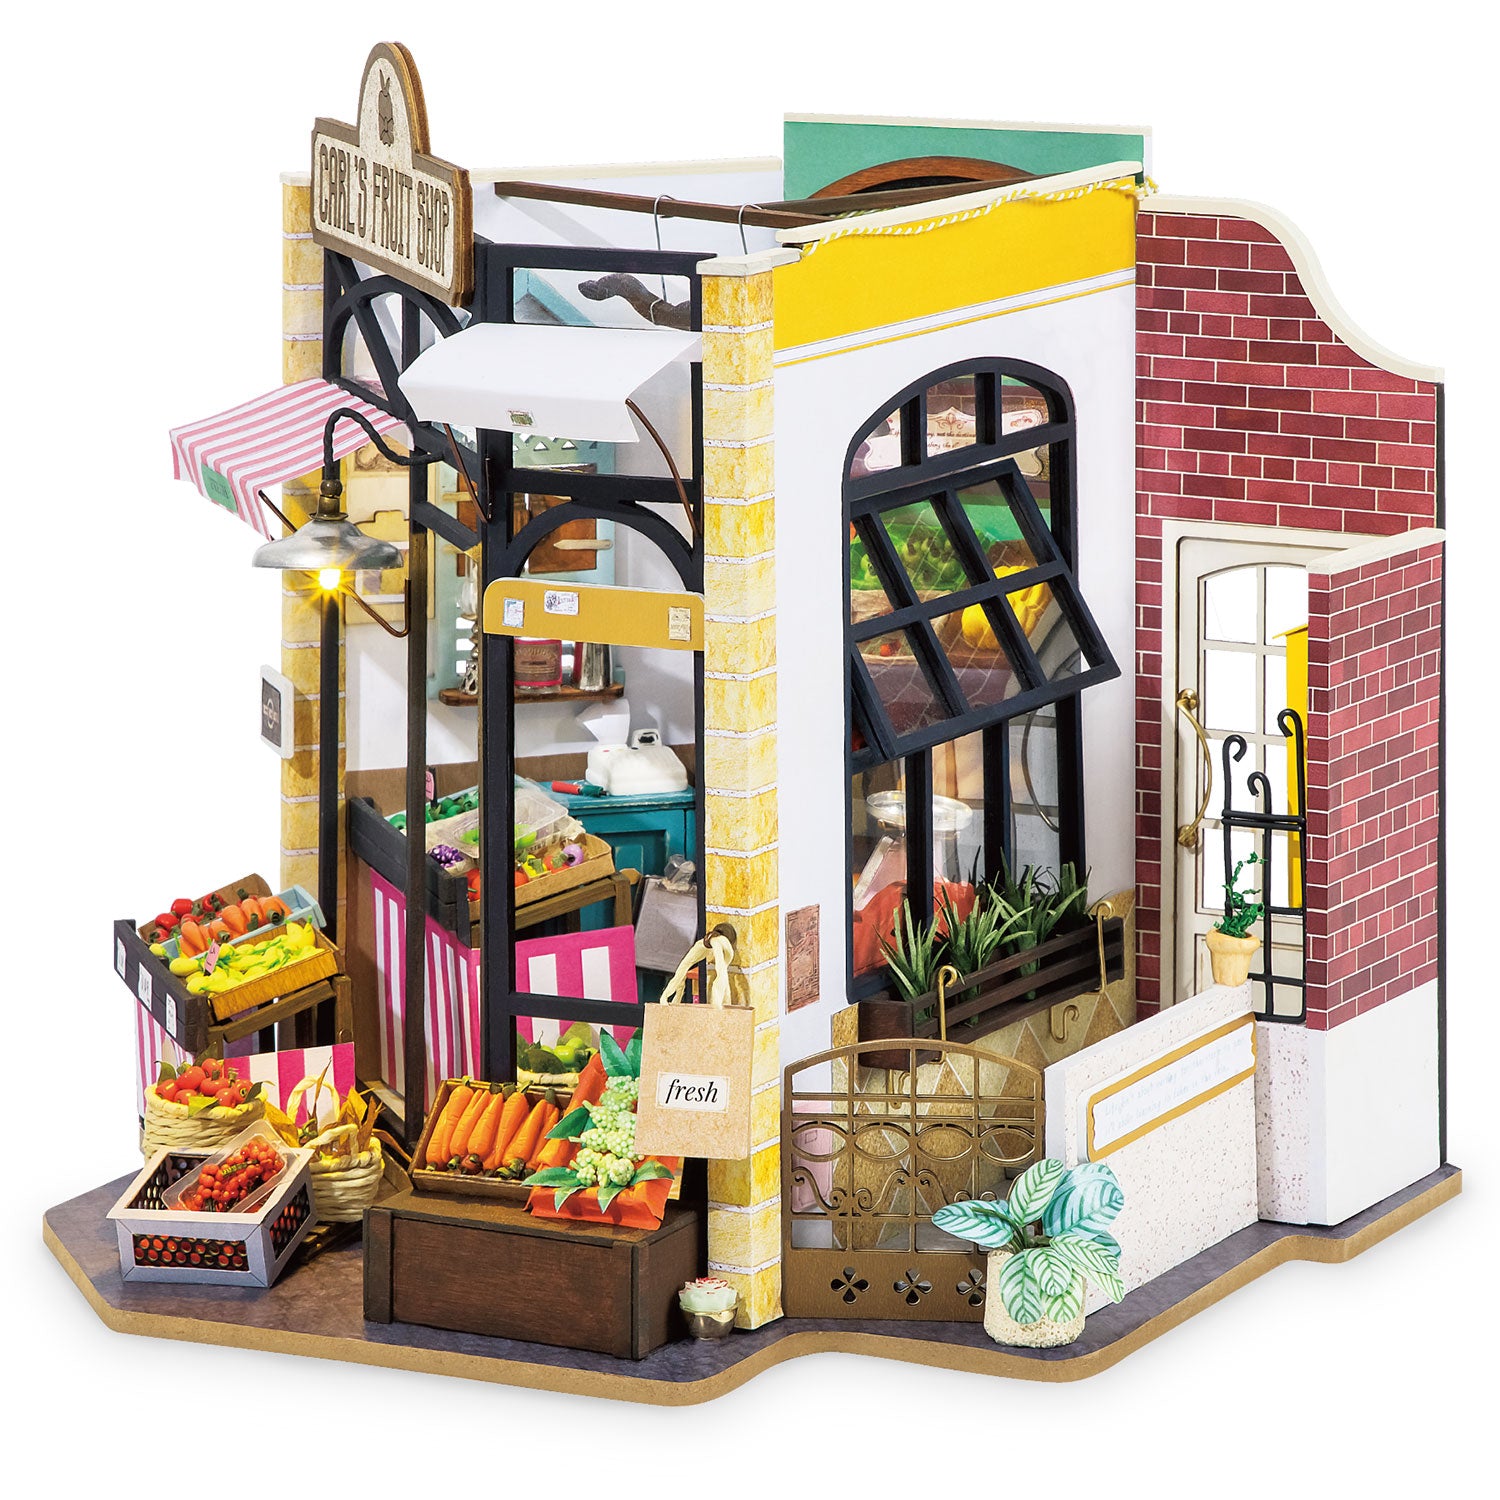 Carl's Fruit Shop (magasin de fruits) - Maison miniature-Robotime--